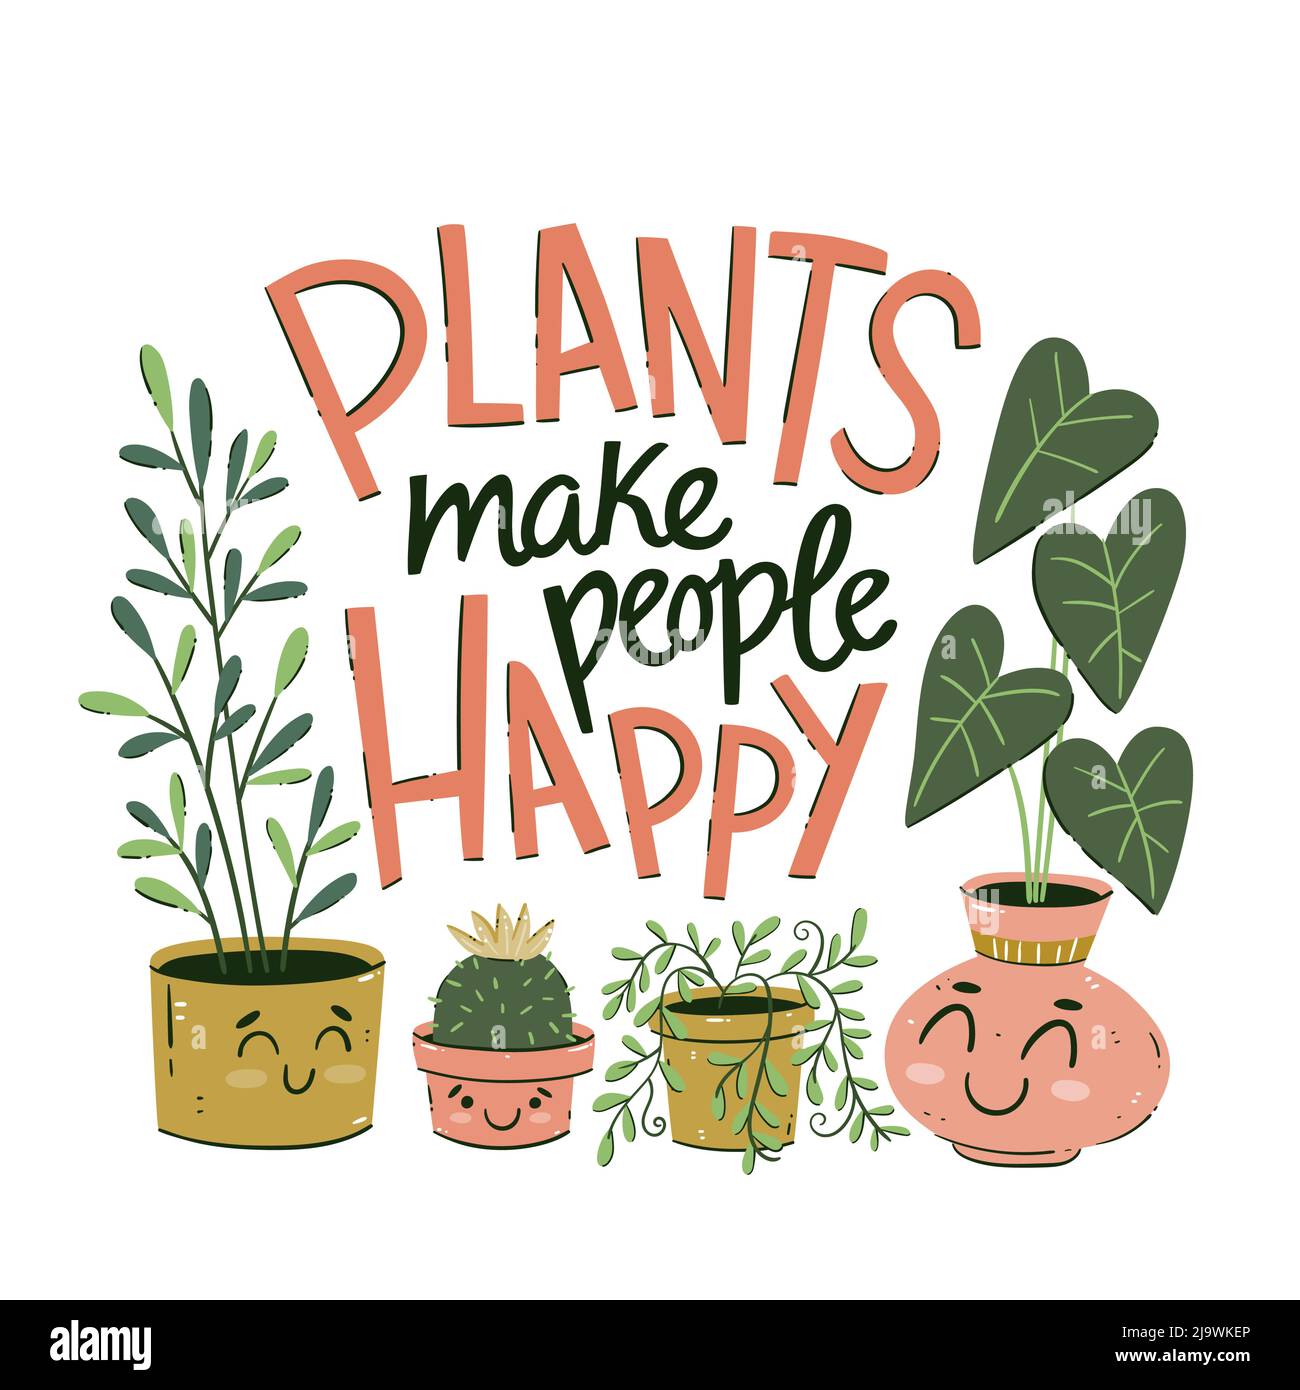 Gruppe von Pflanzen im Cartoon-Stil mit dem Text "Pflanzen machen Menschen glücklich". Lustige Abbildung von Haustieren. Handgezeichnete Vektorgrafik. Stock Vektor